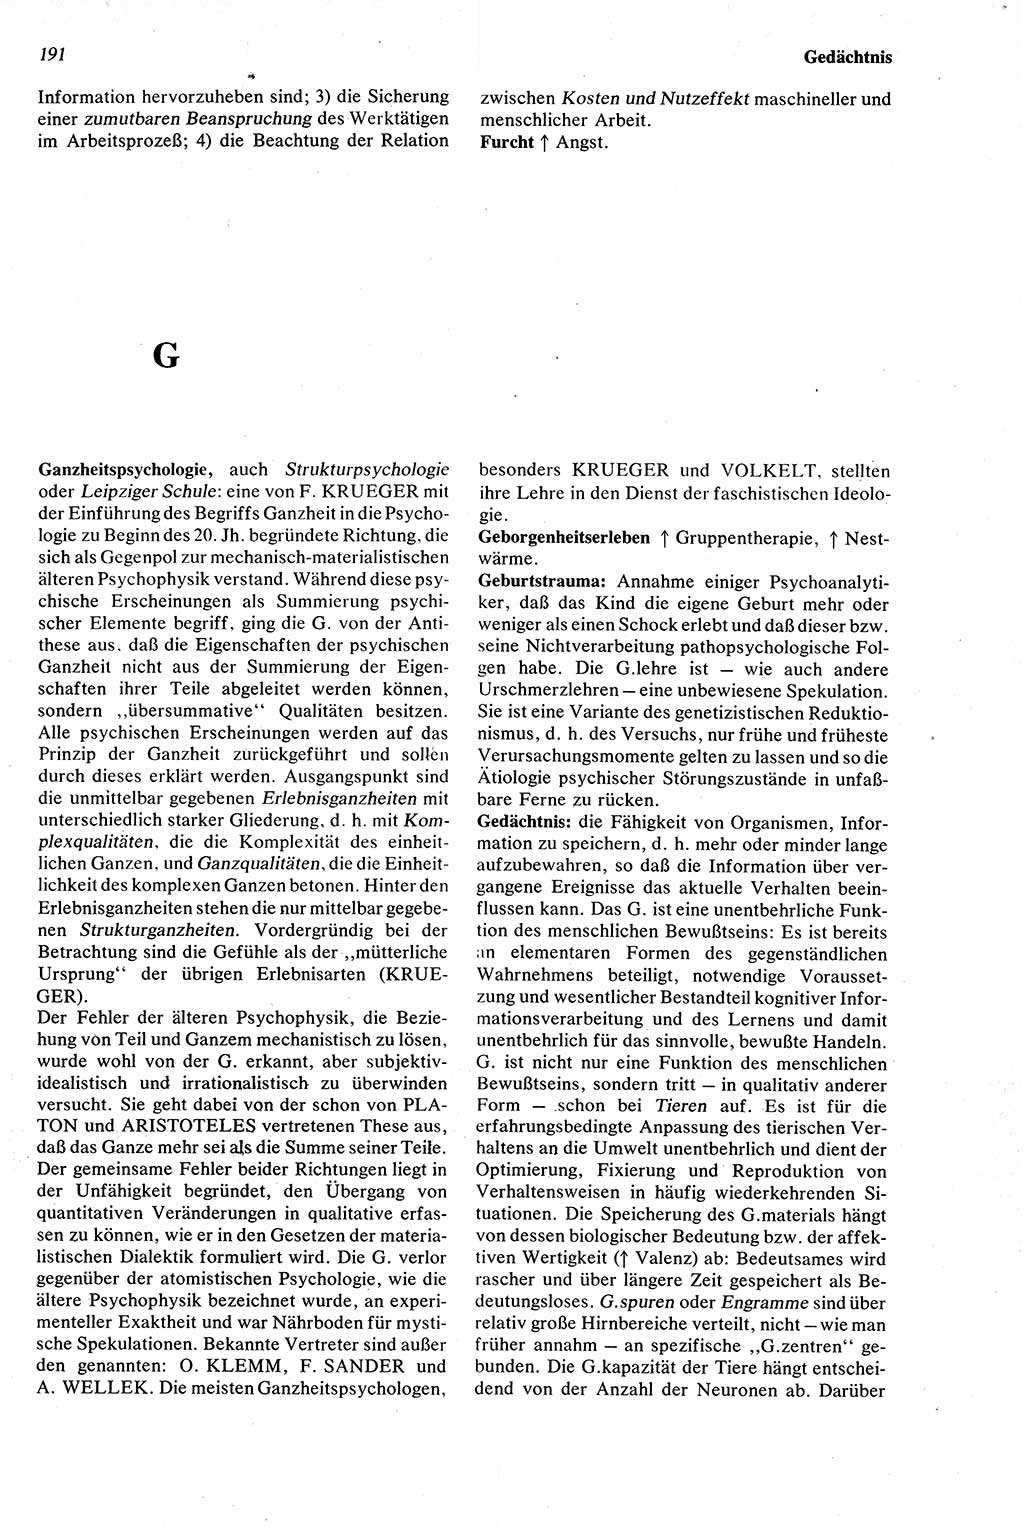 Wörterbuch der Psychologie [Deutsche Demokratische Republik (DDR)] 1976, Seite 191 (Wb. Psych. DDR 1976, S. 191)